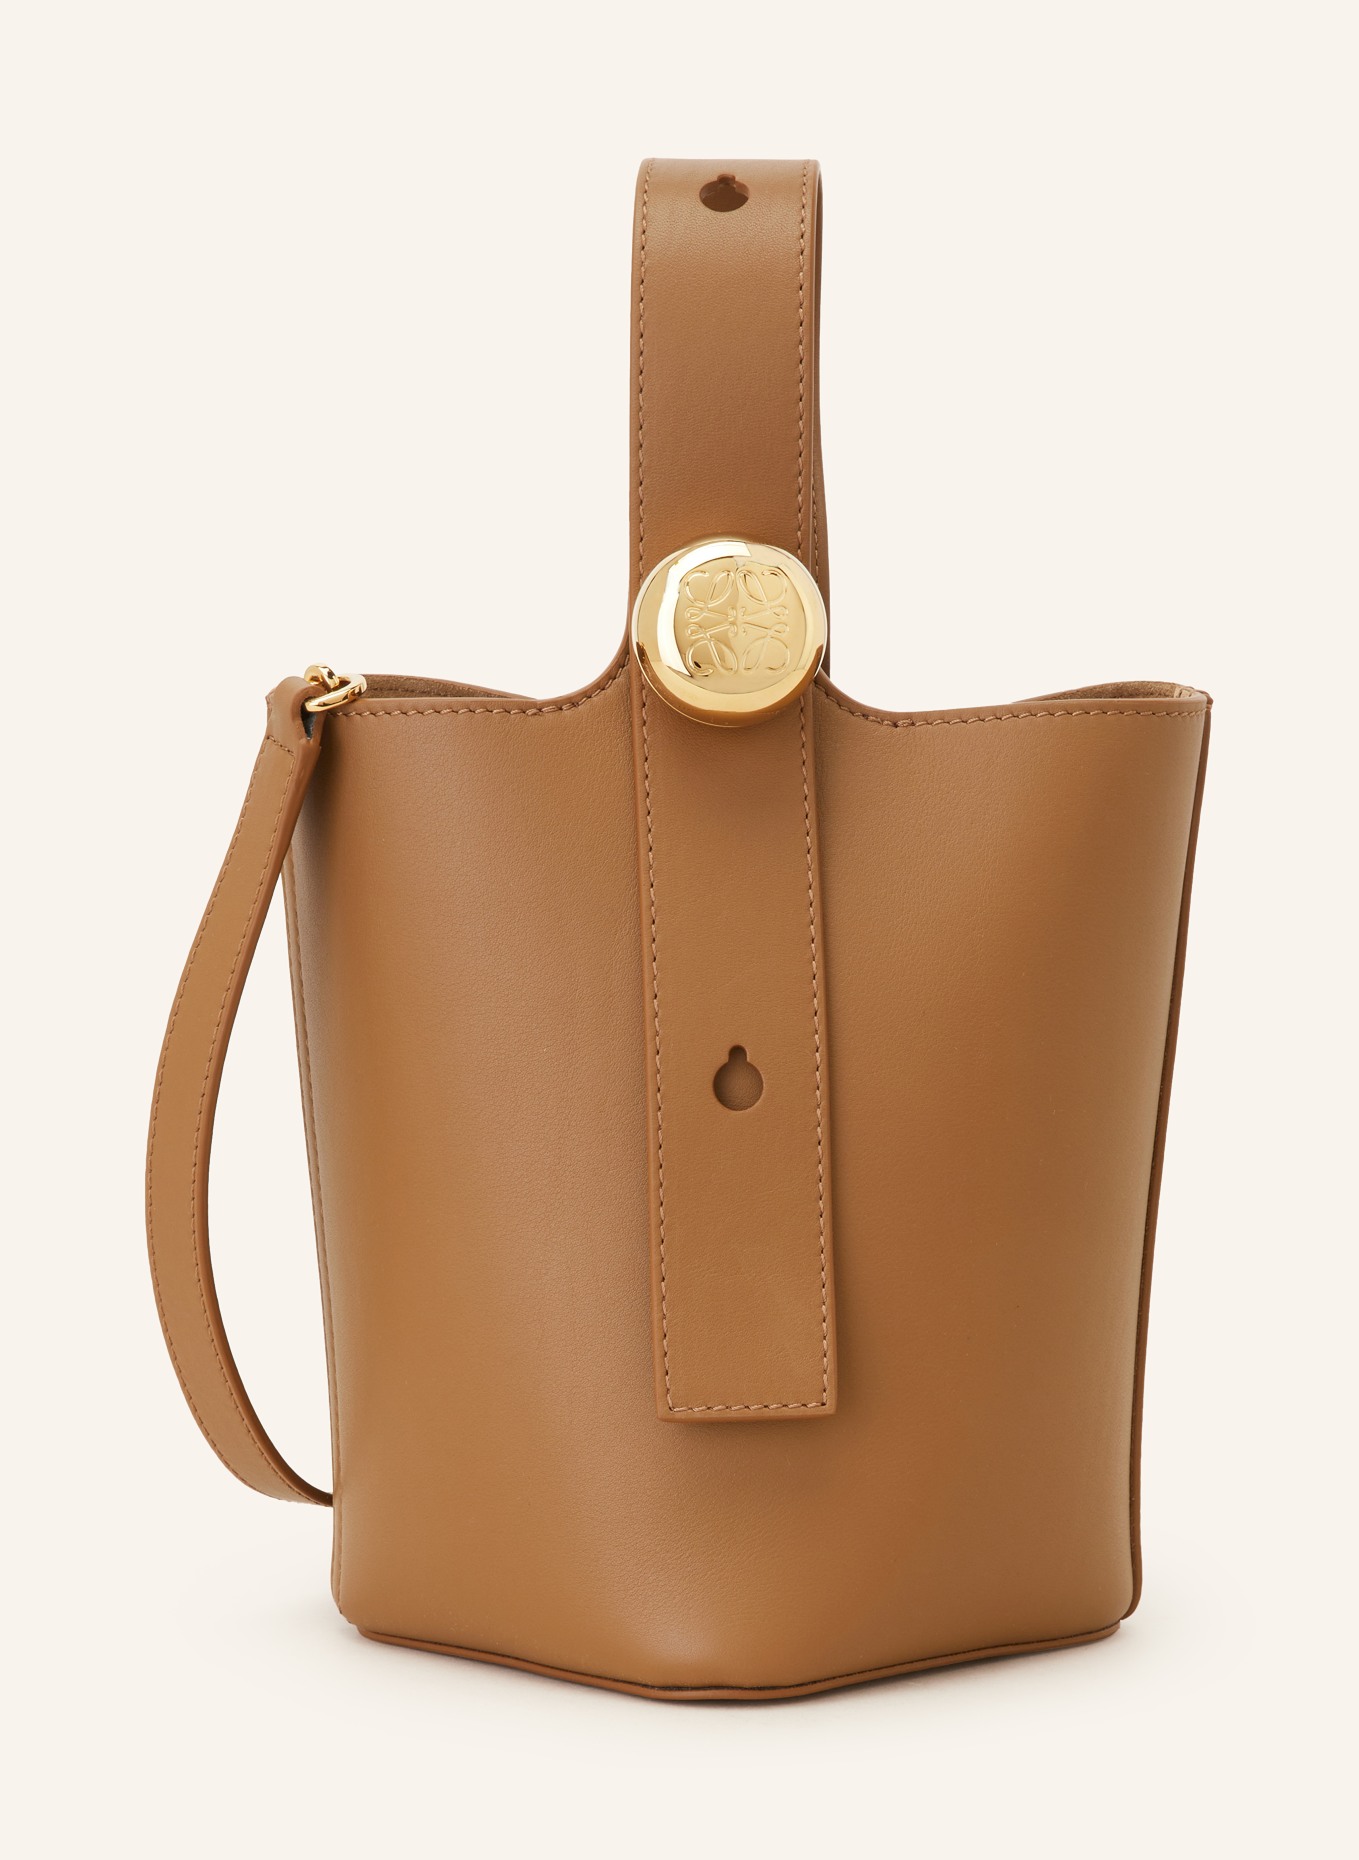 LOEWE Handtasche PEBBLE BUCKET MINI, Farbe: CAMEL (Bild 1)